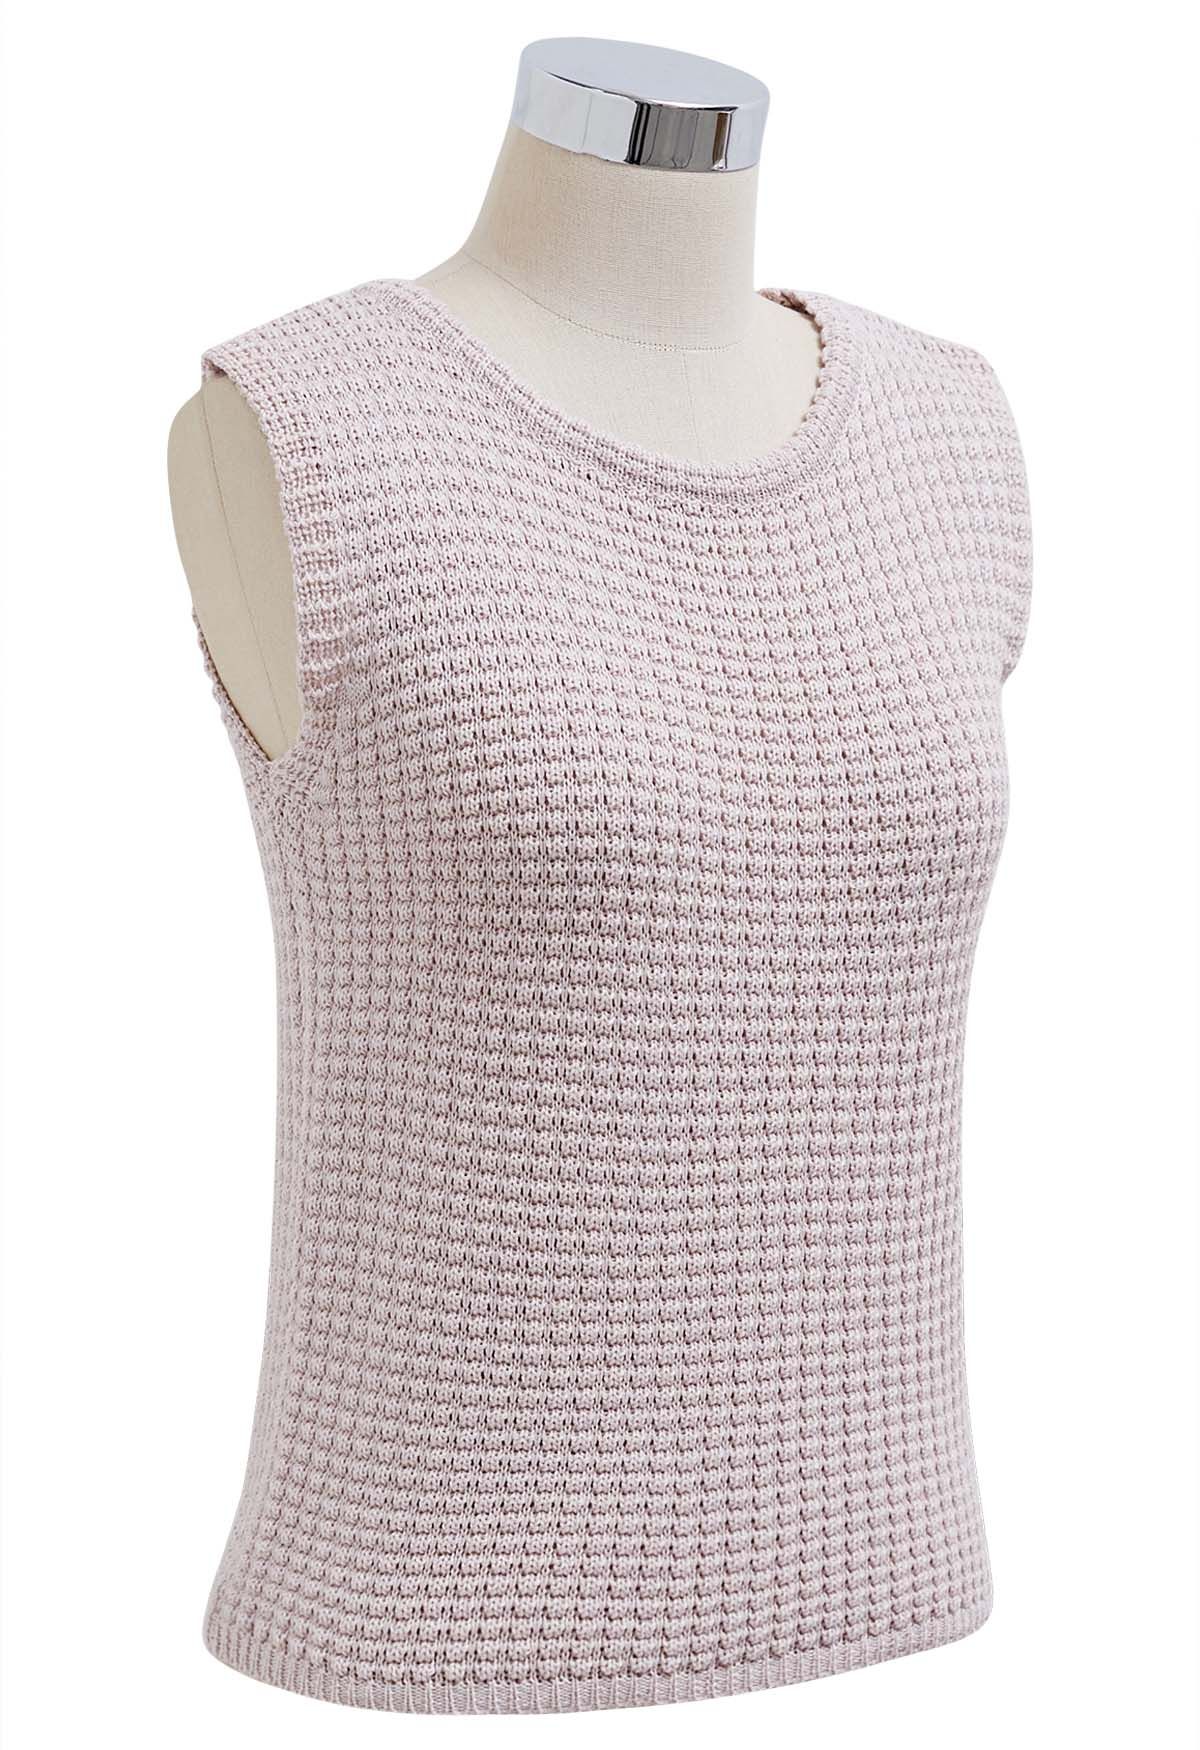 Haut sans manches en tricot ajouré de couleur unie en rose clair